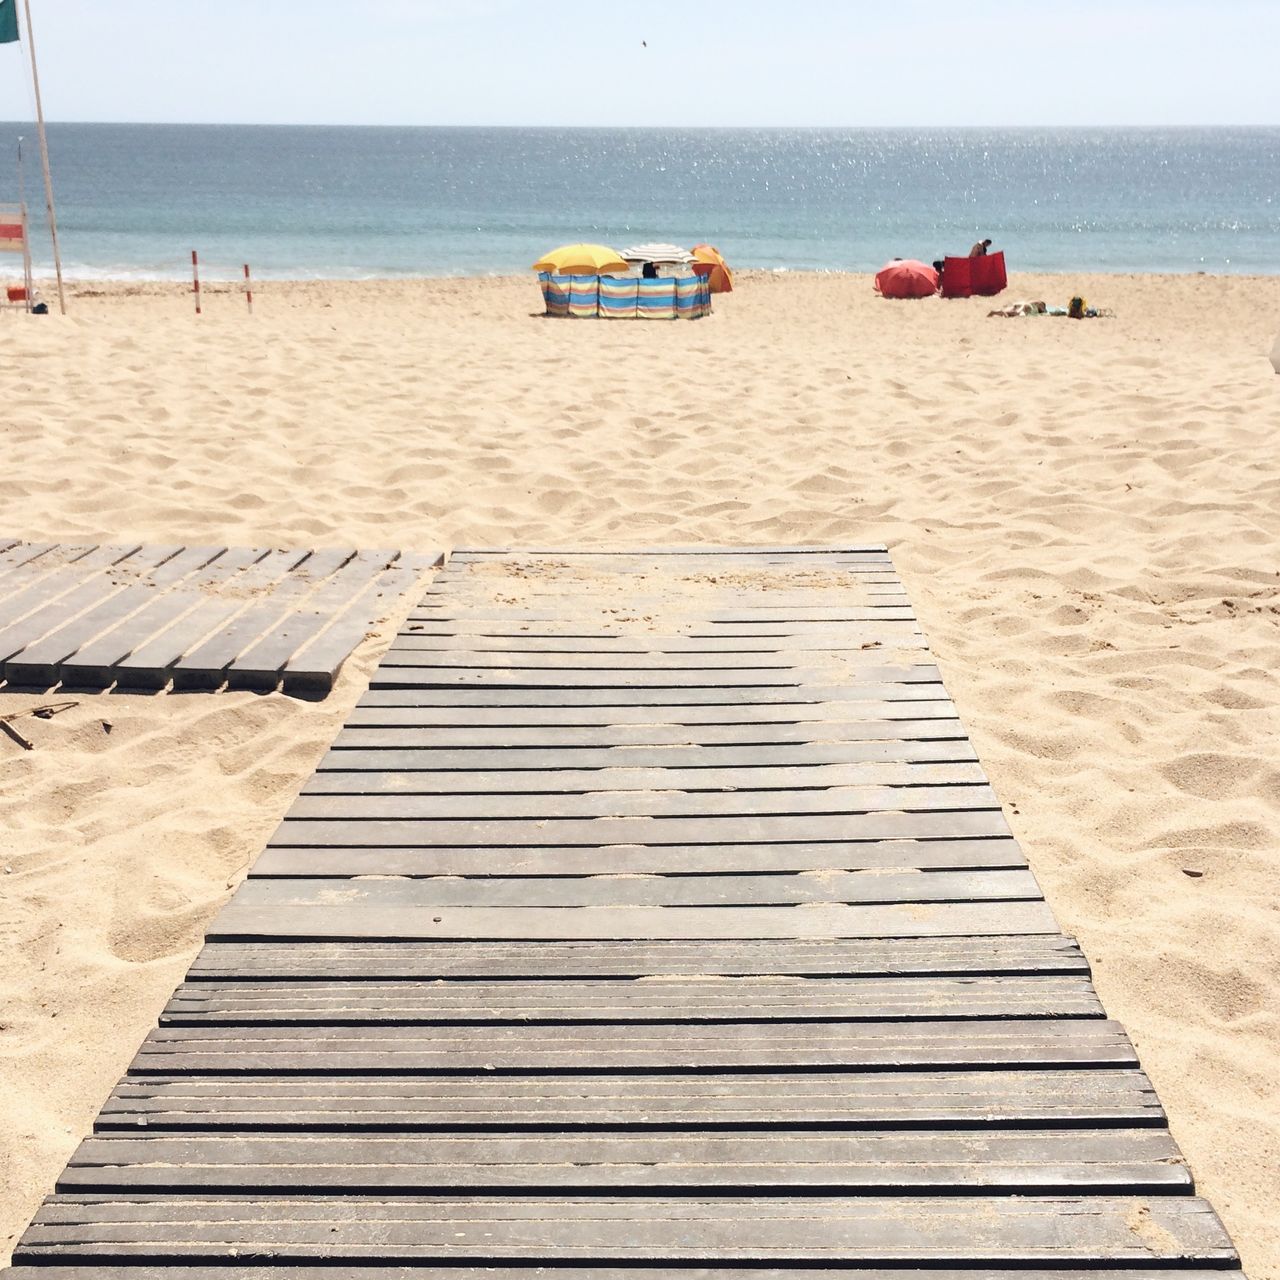 Wooden plank on beach